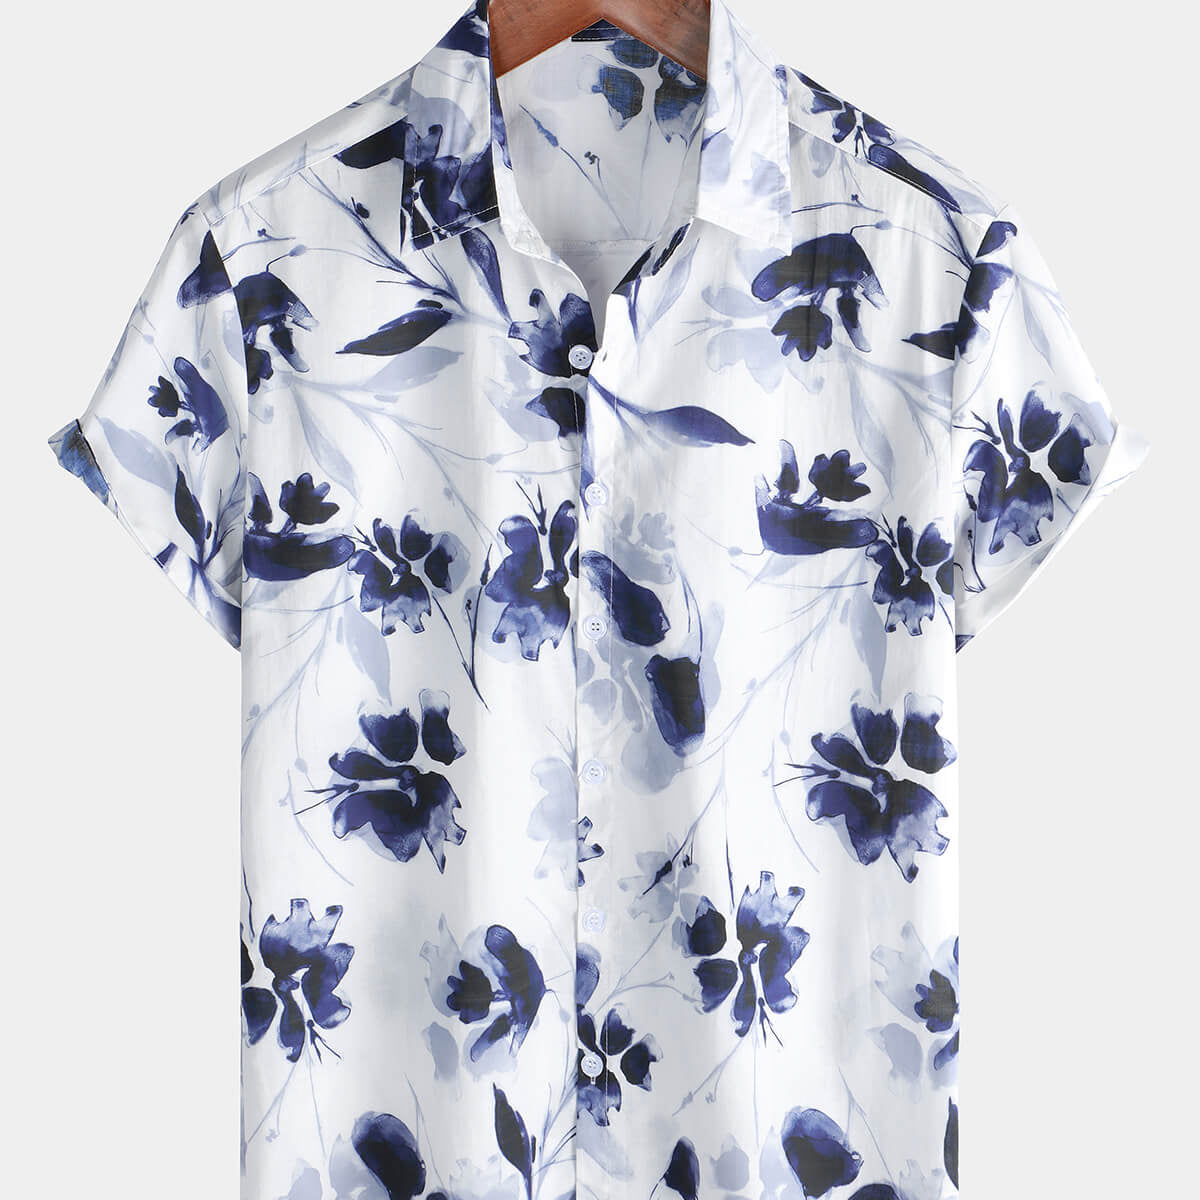 Men's Summer Holiday Hawaiian Floral Button Up Short Sleeve Shirt